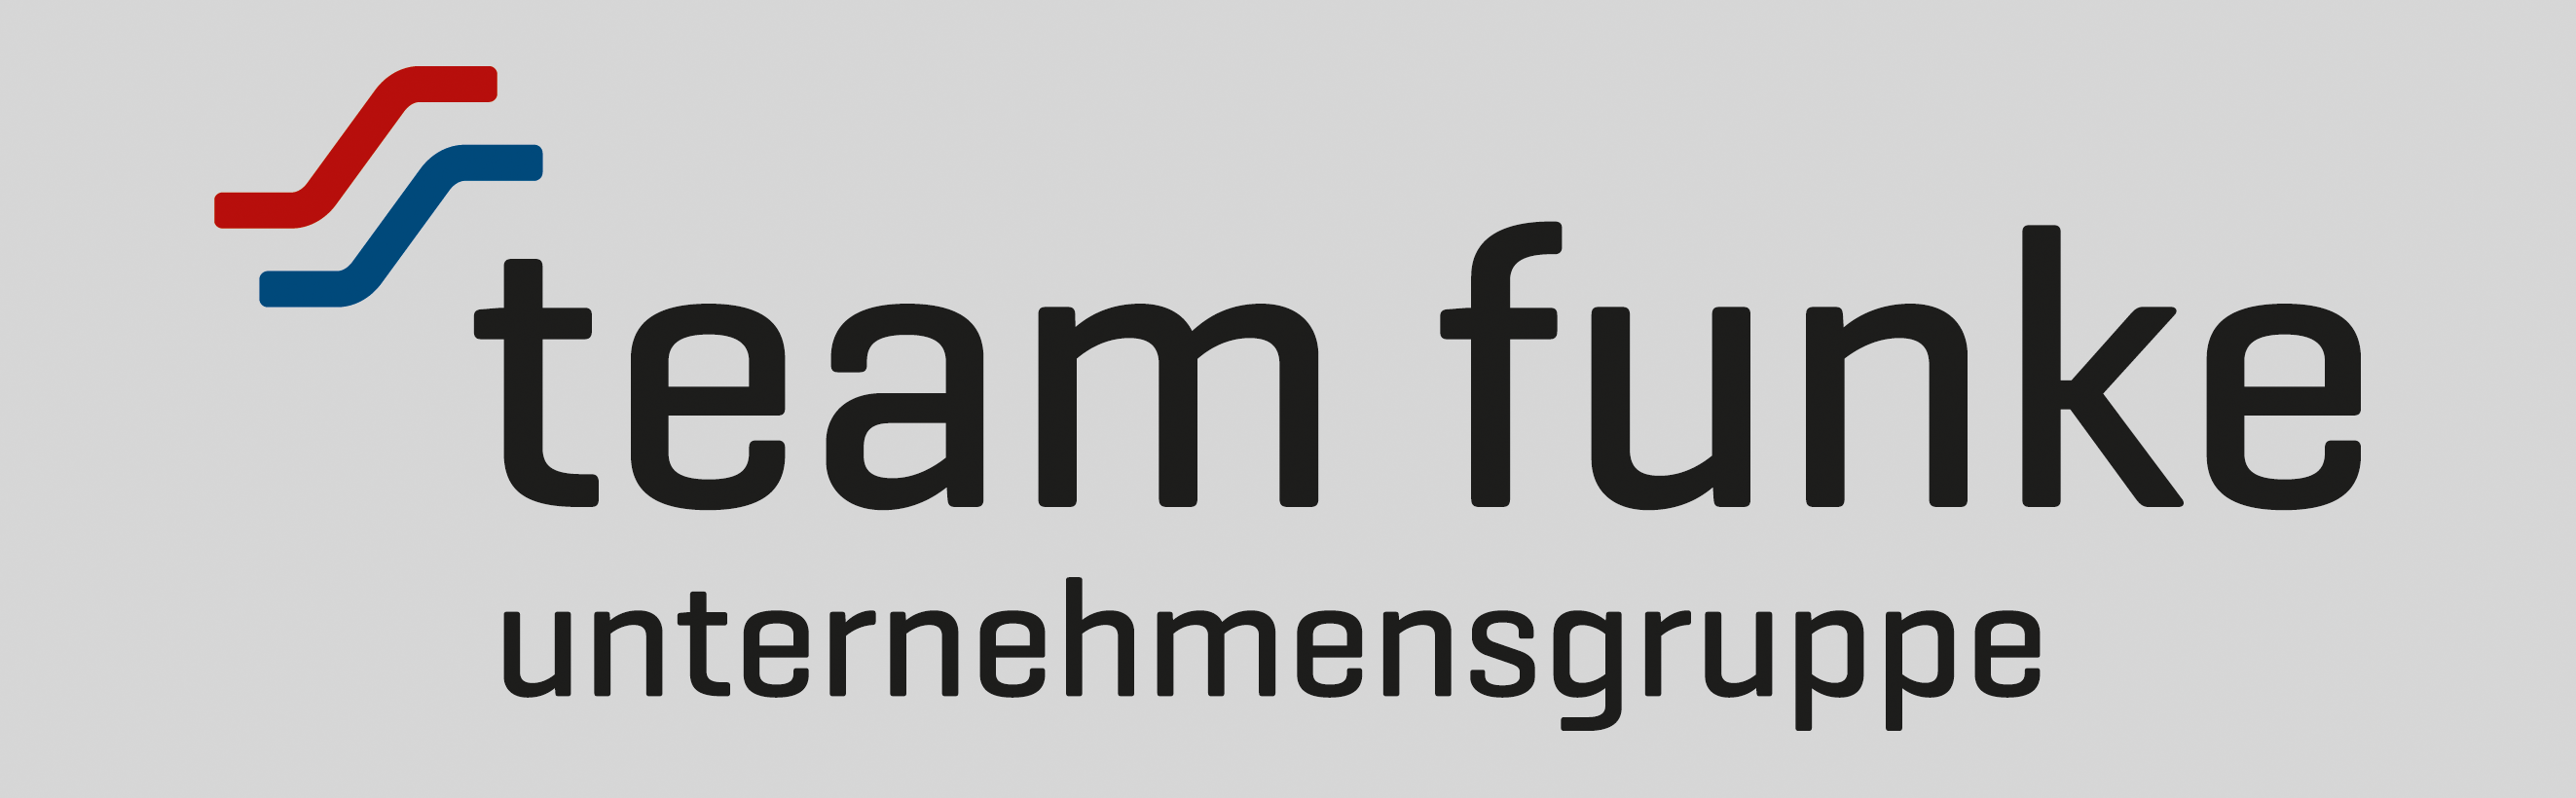 Funke GmbH & Co. KG